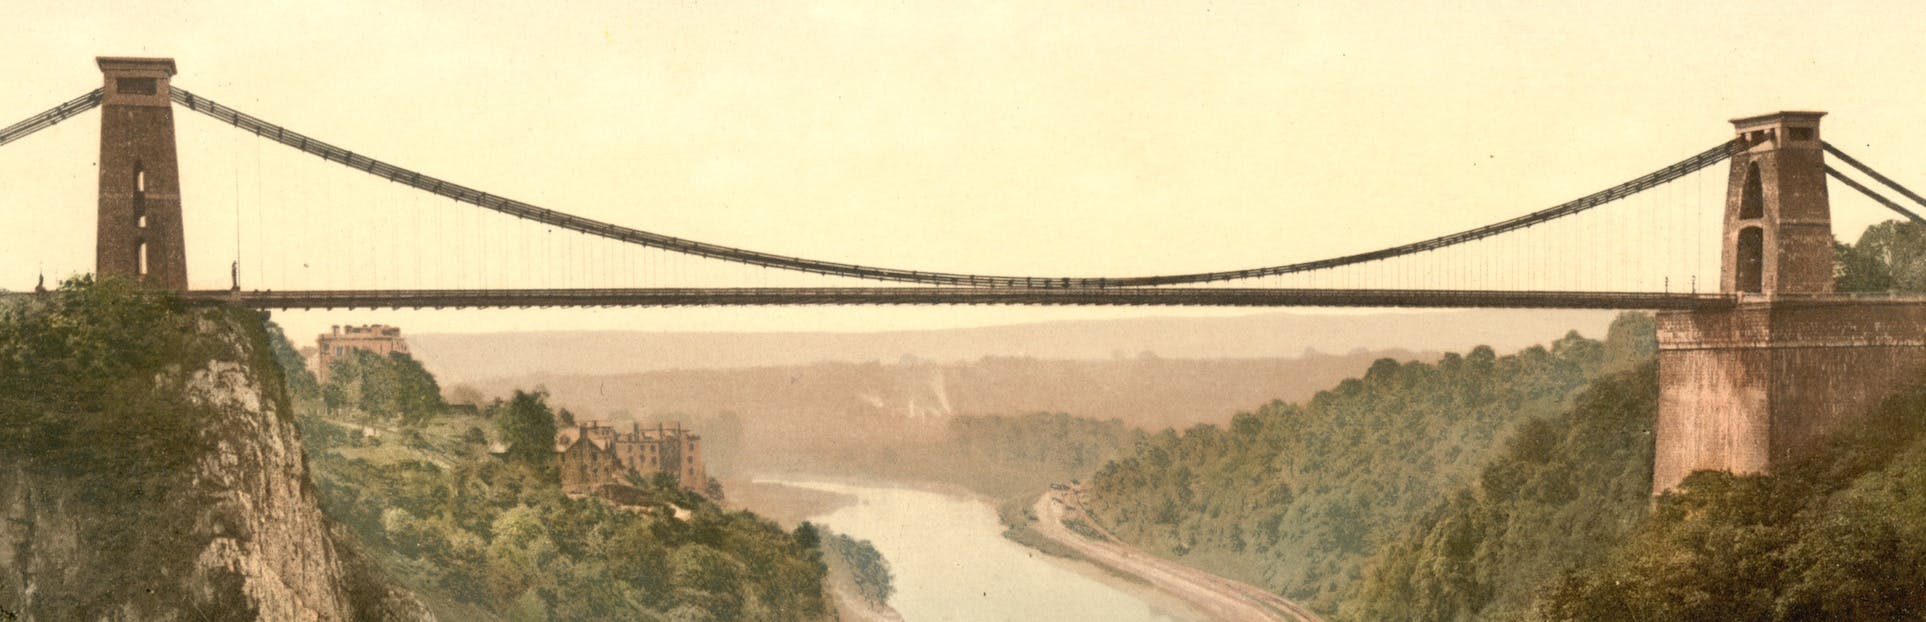 Descubra el barco y el puente de Brunel en un tour de audio autoguiado en Bristol